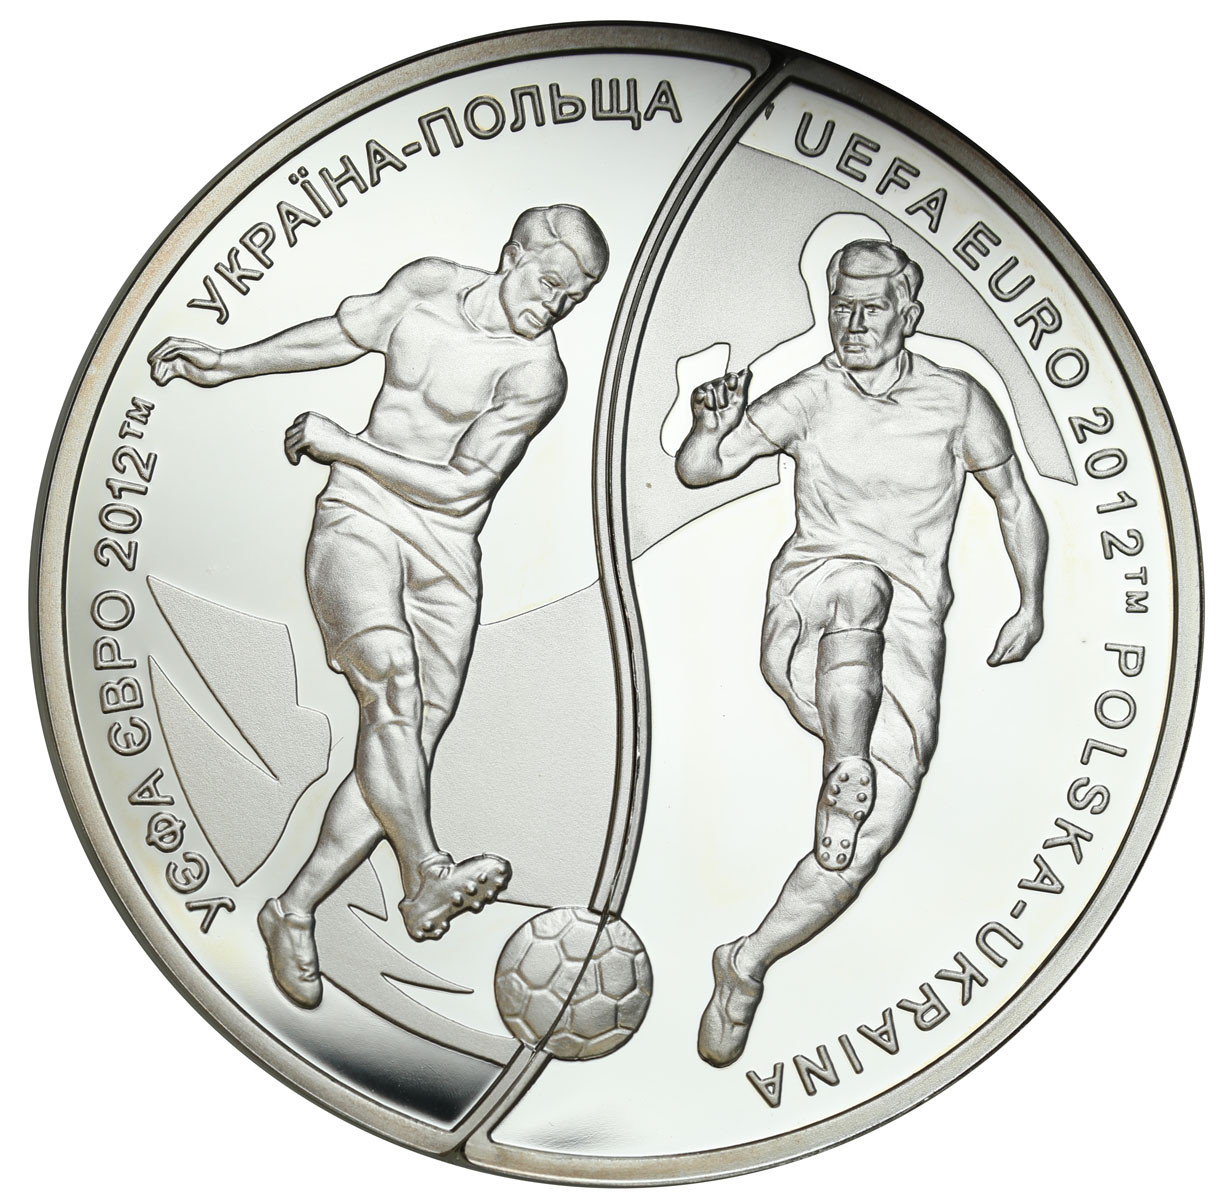 III RP. 10 złotych + 10 hrywien EURO 2012 POLSKIE